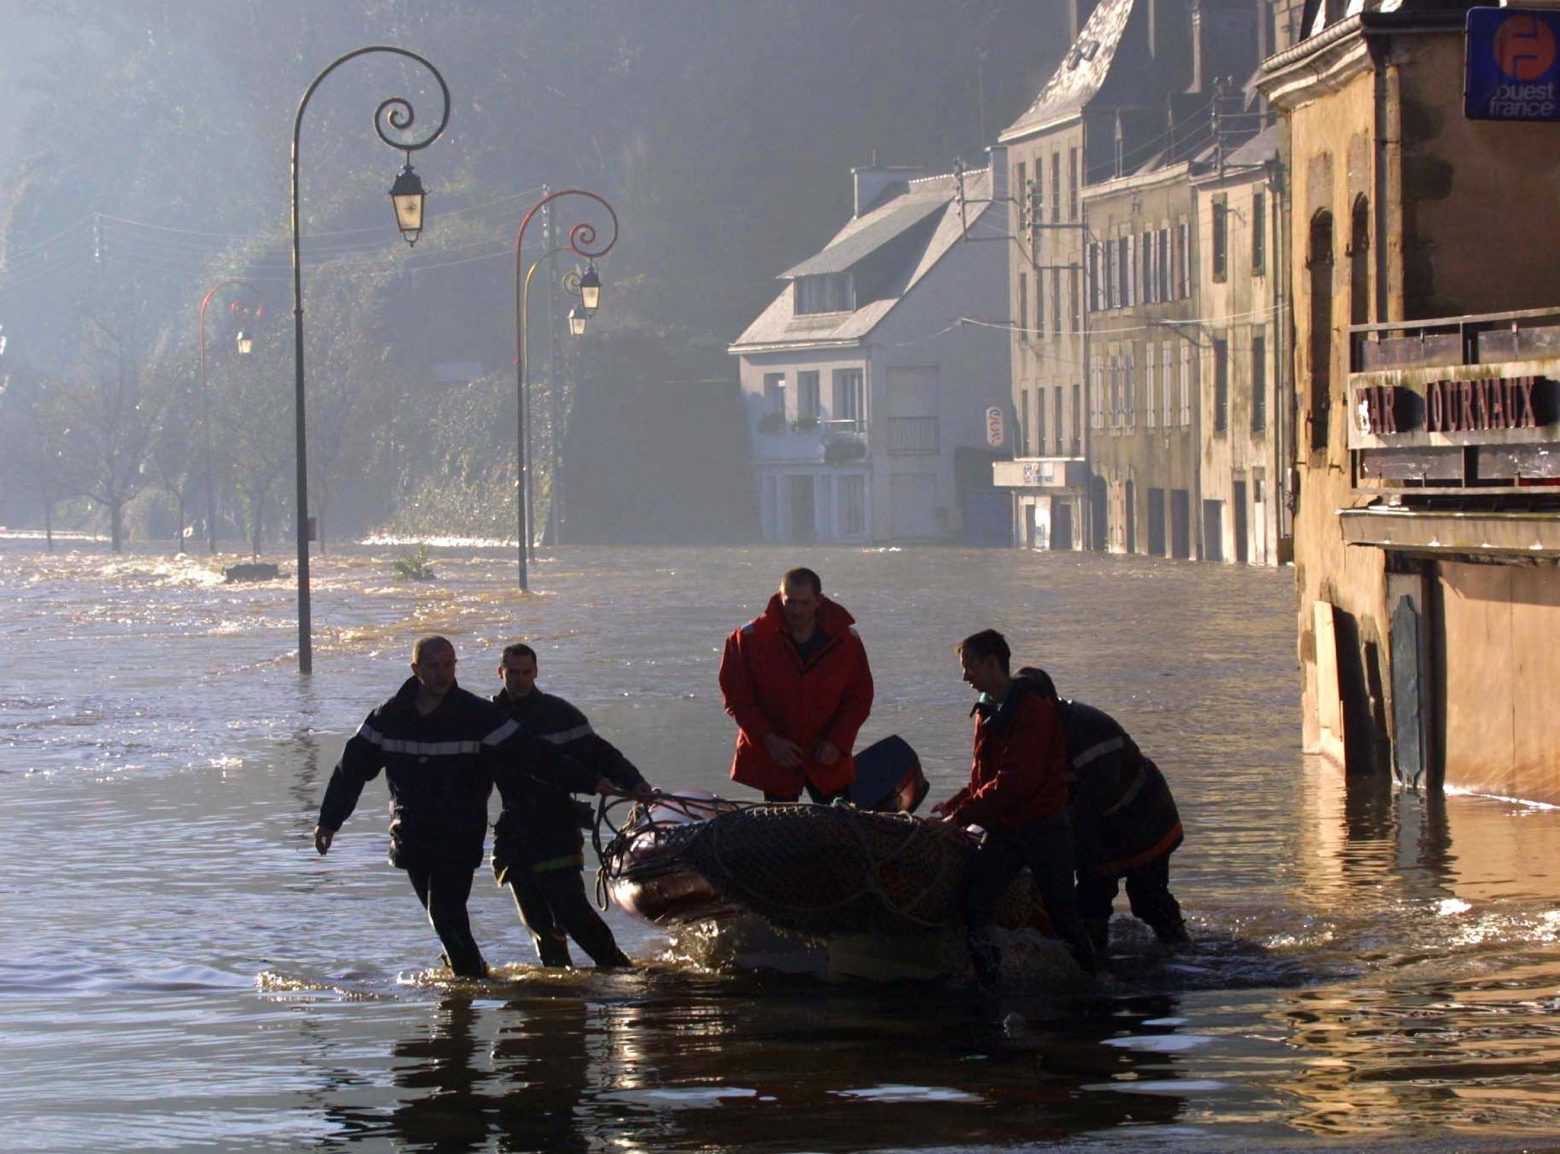 Γαλλία: Μετά την ξηρασία, φονικές καταιγίδες στην Κορσική – Ένας νεκρός και εννέα τραυματίες